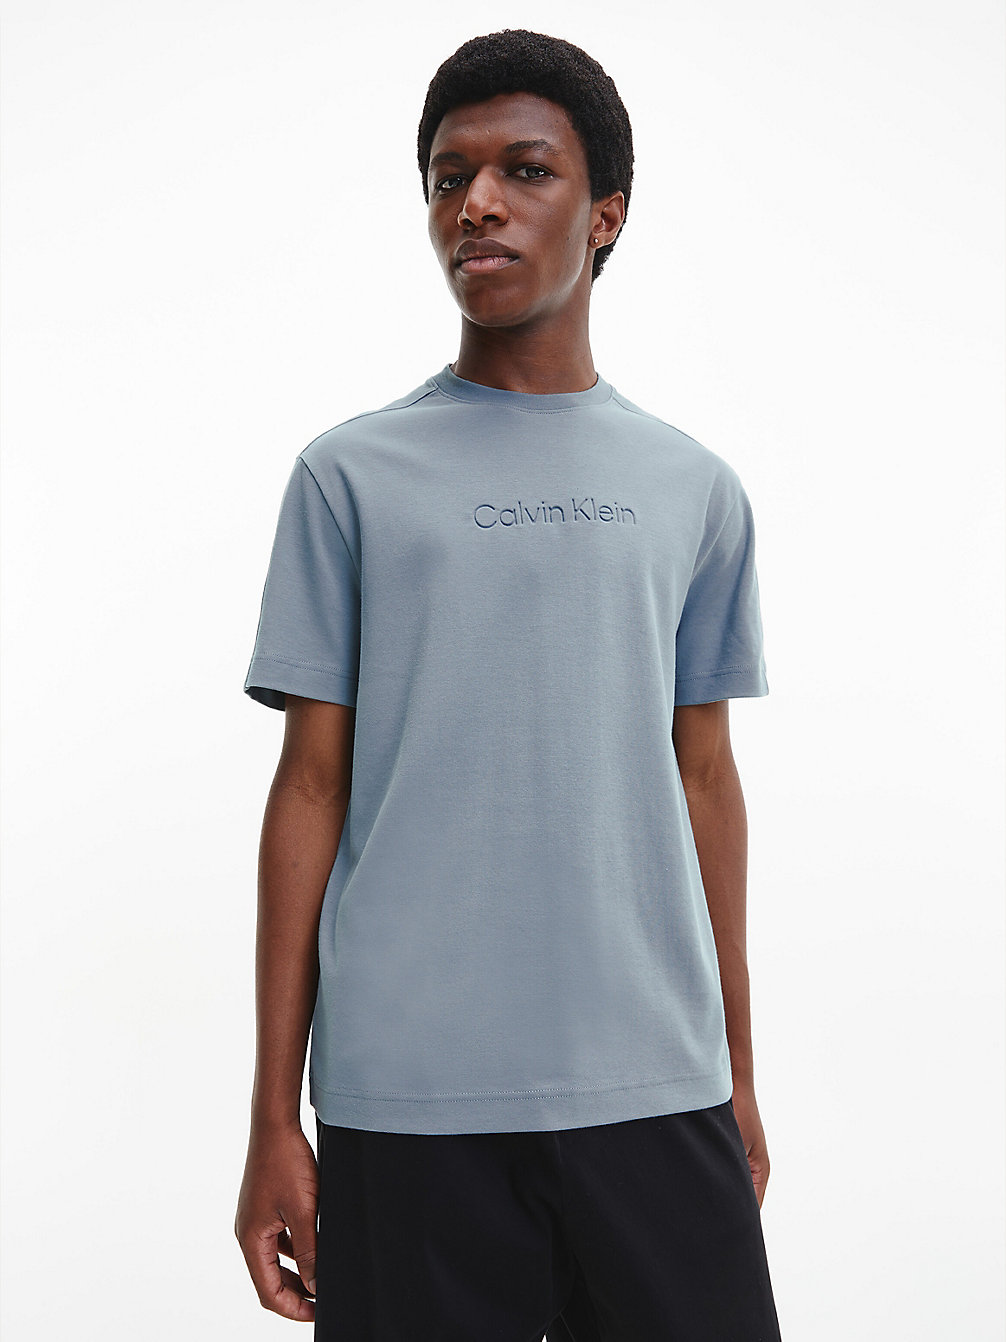 GREY TAR Organic Cotton T-Shirt undefined men Calvin Klein